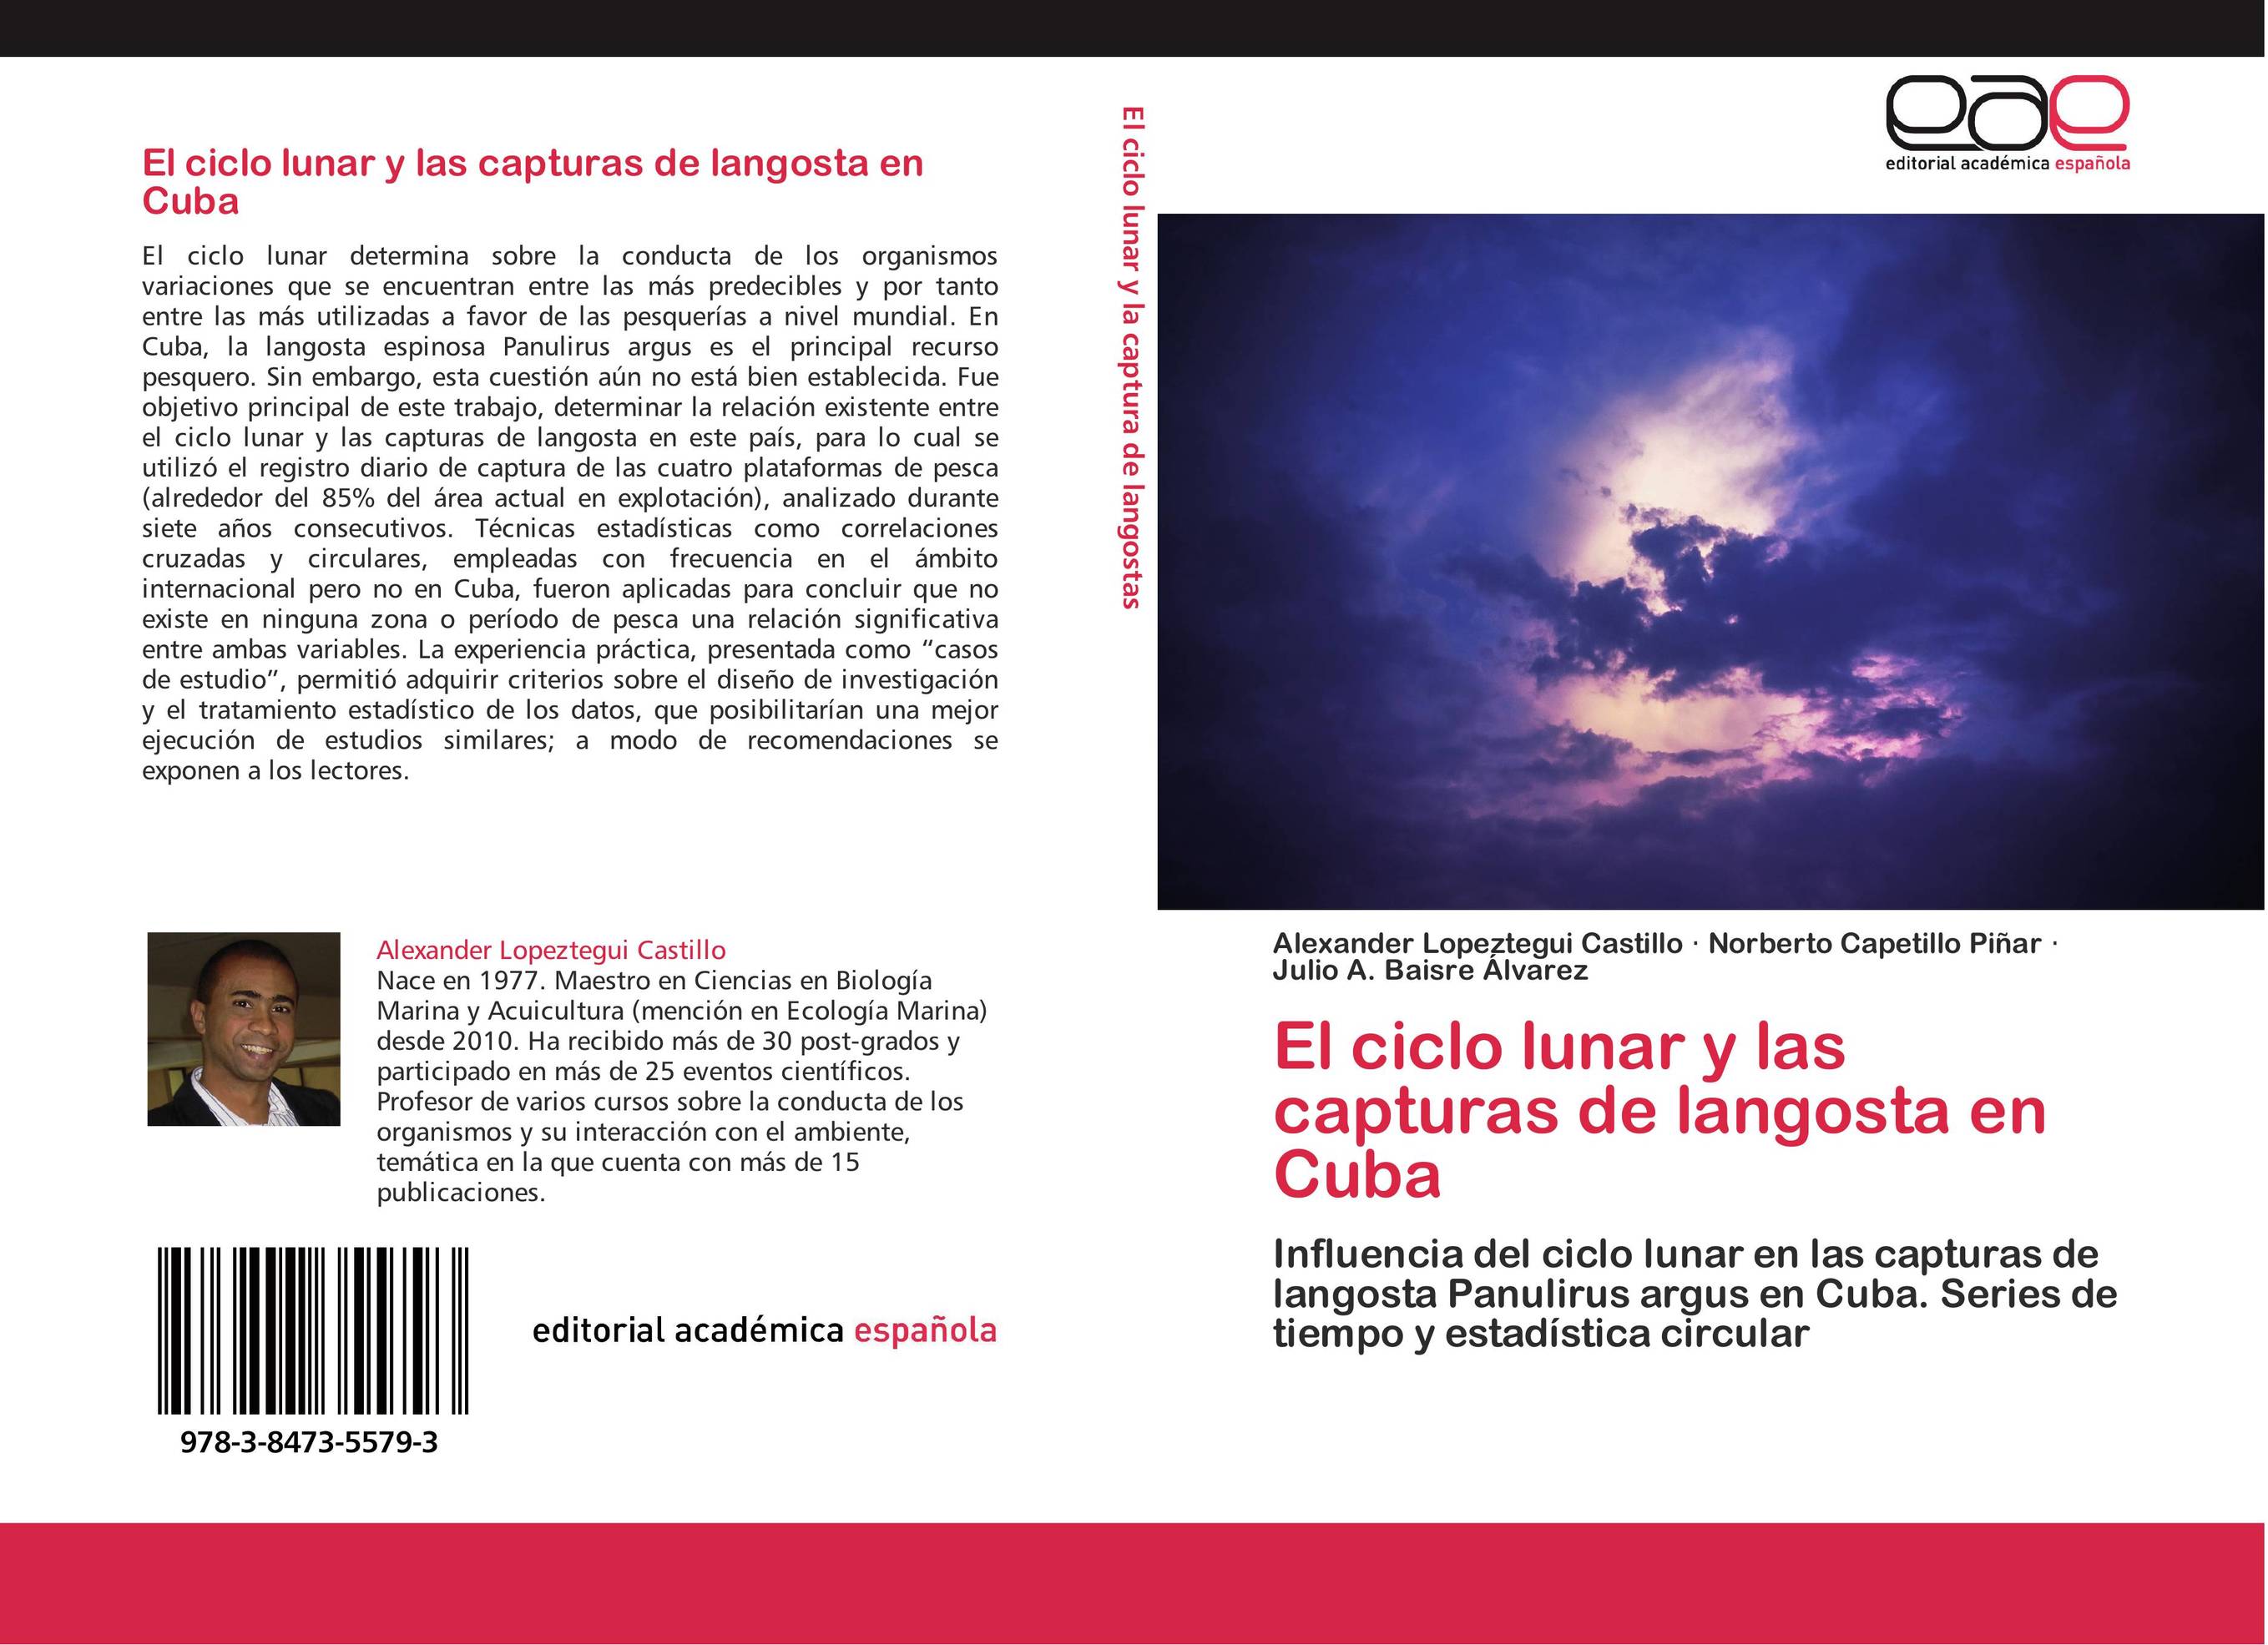 El ciclo lunar y las capturas de langosta en Cuba